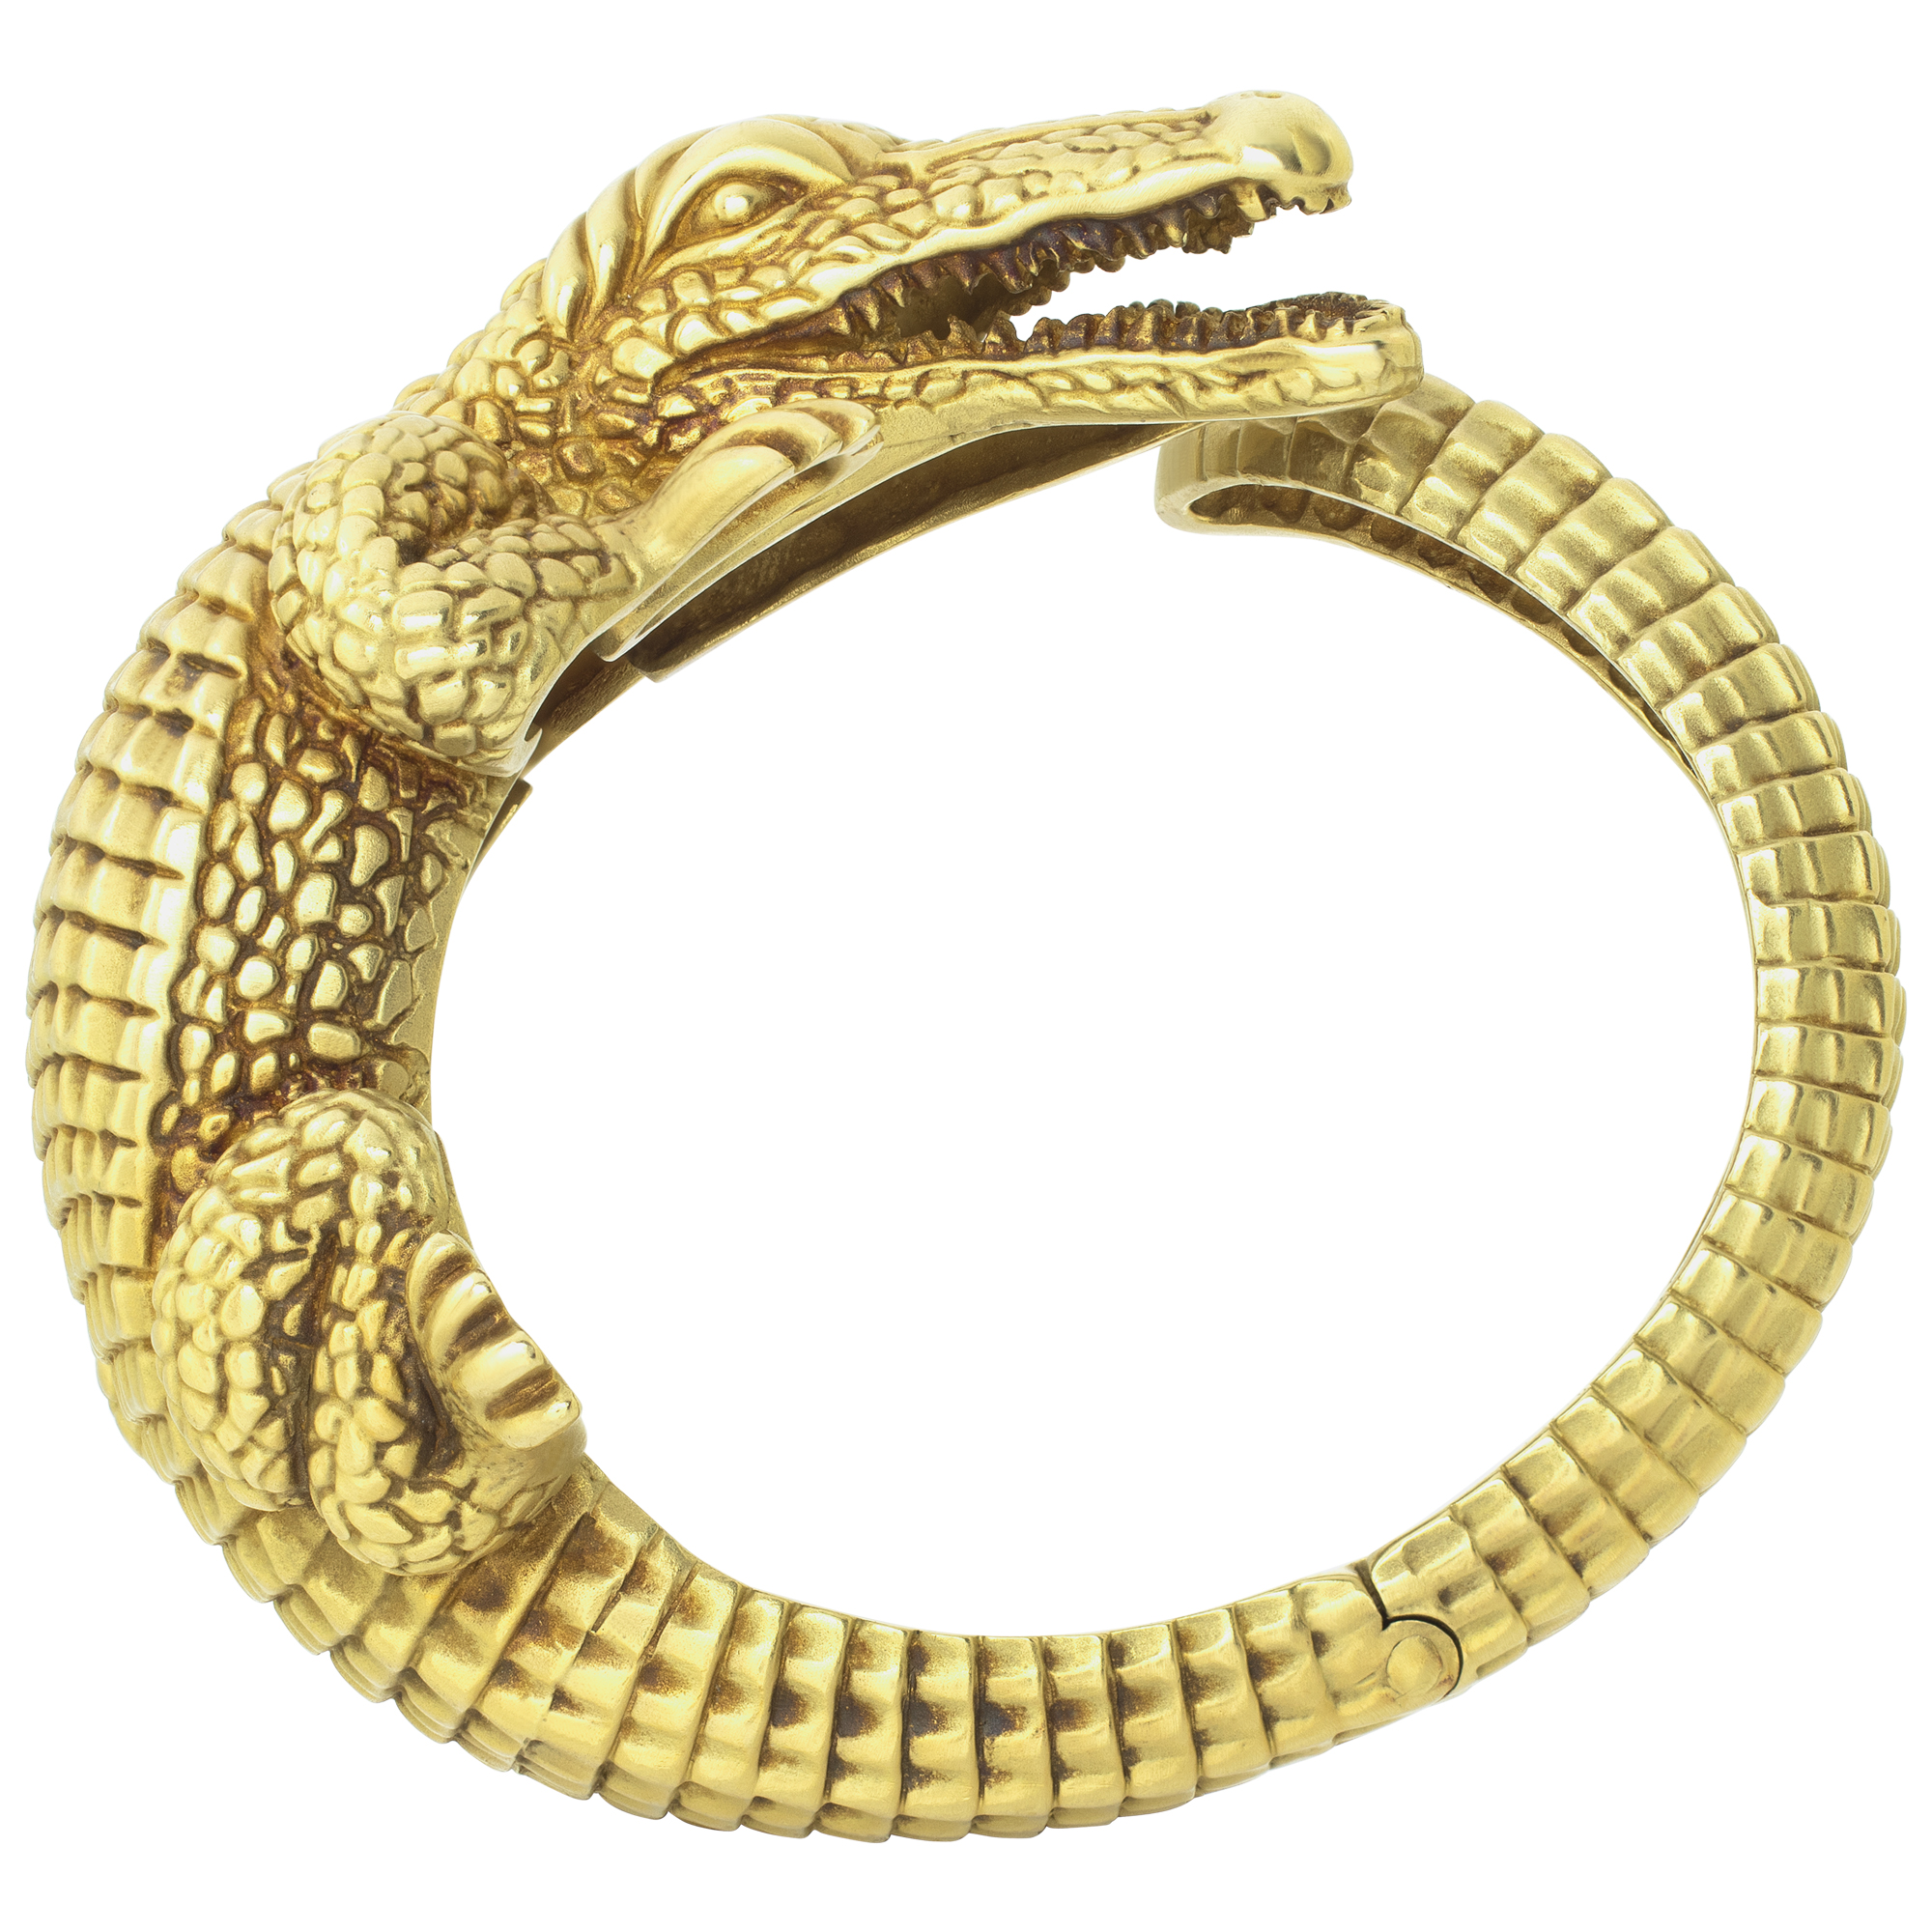 Barry Kieselstein Cord Alligator Cuff Bracelet in 18k yellow gold image 1